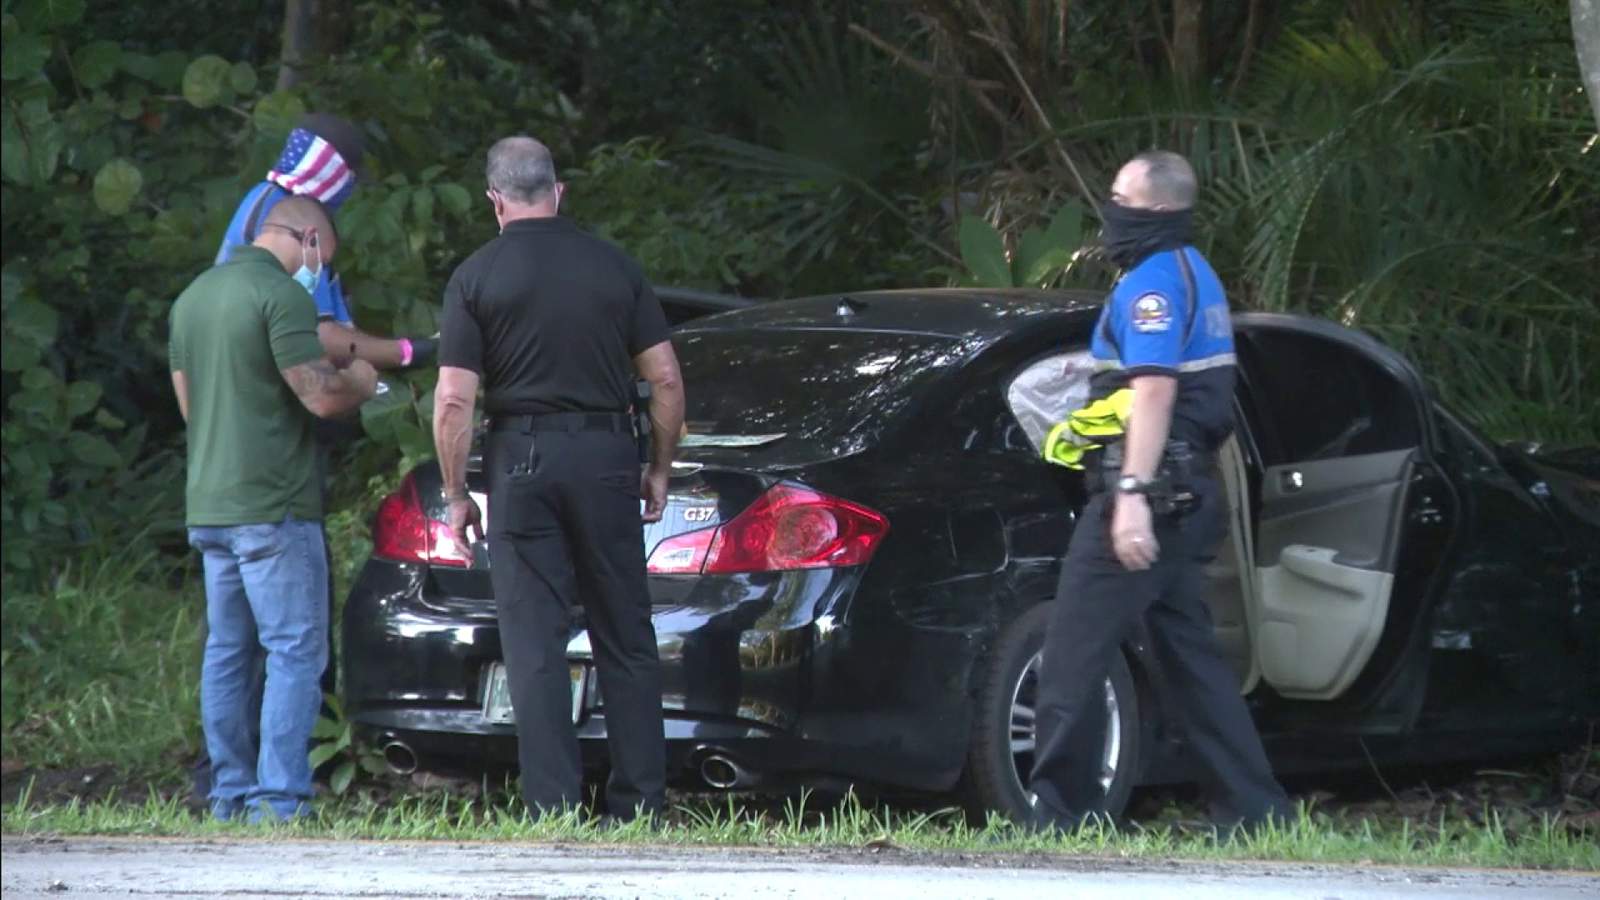 Police: Officers arrest 2 suspects after Key Biscayne carjacking, Crandon Park-area crash